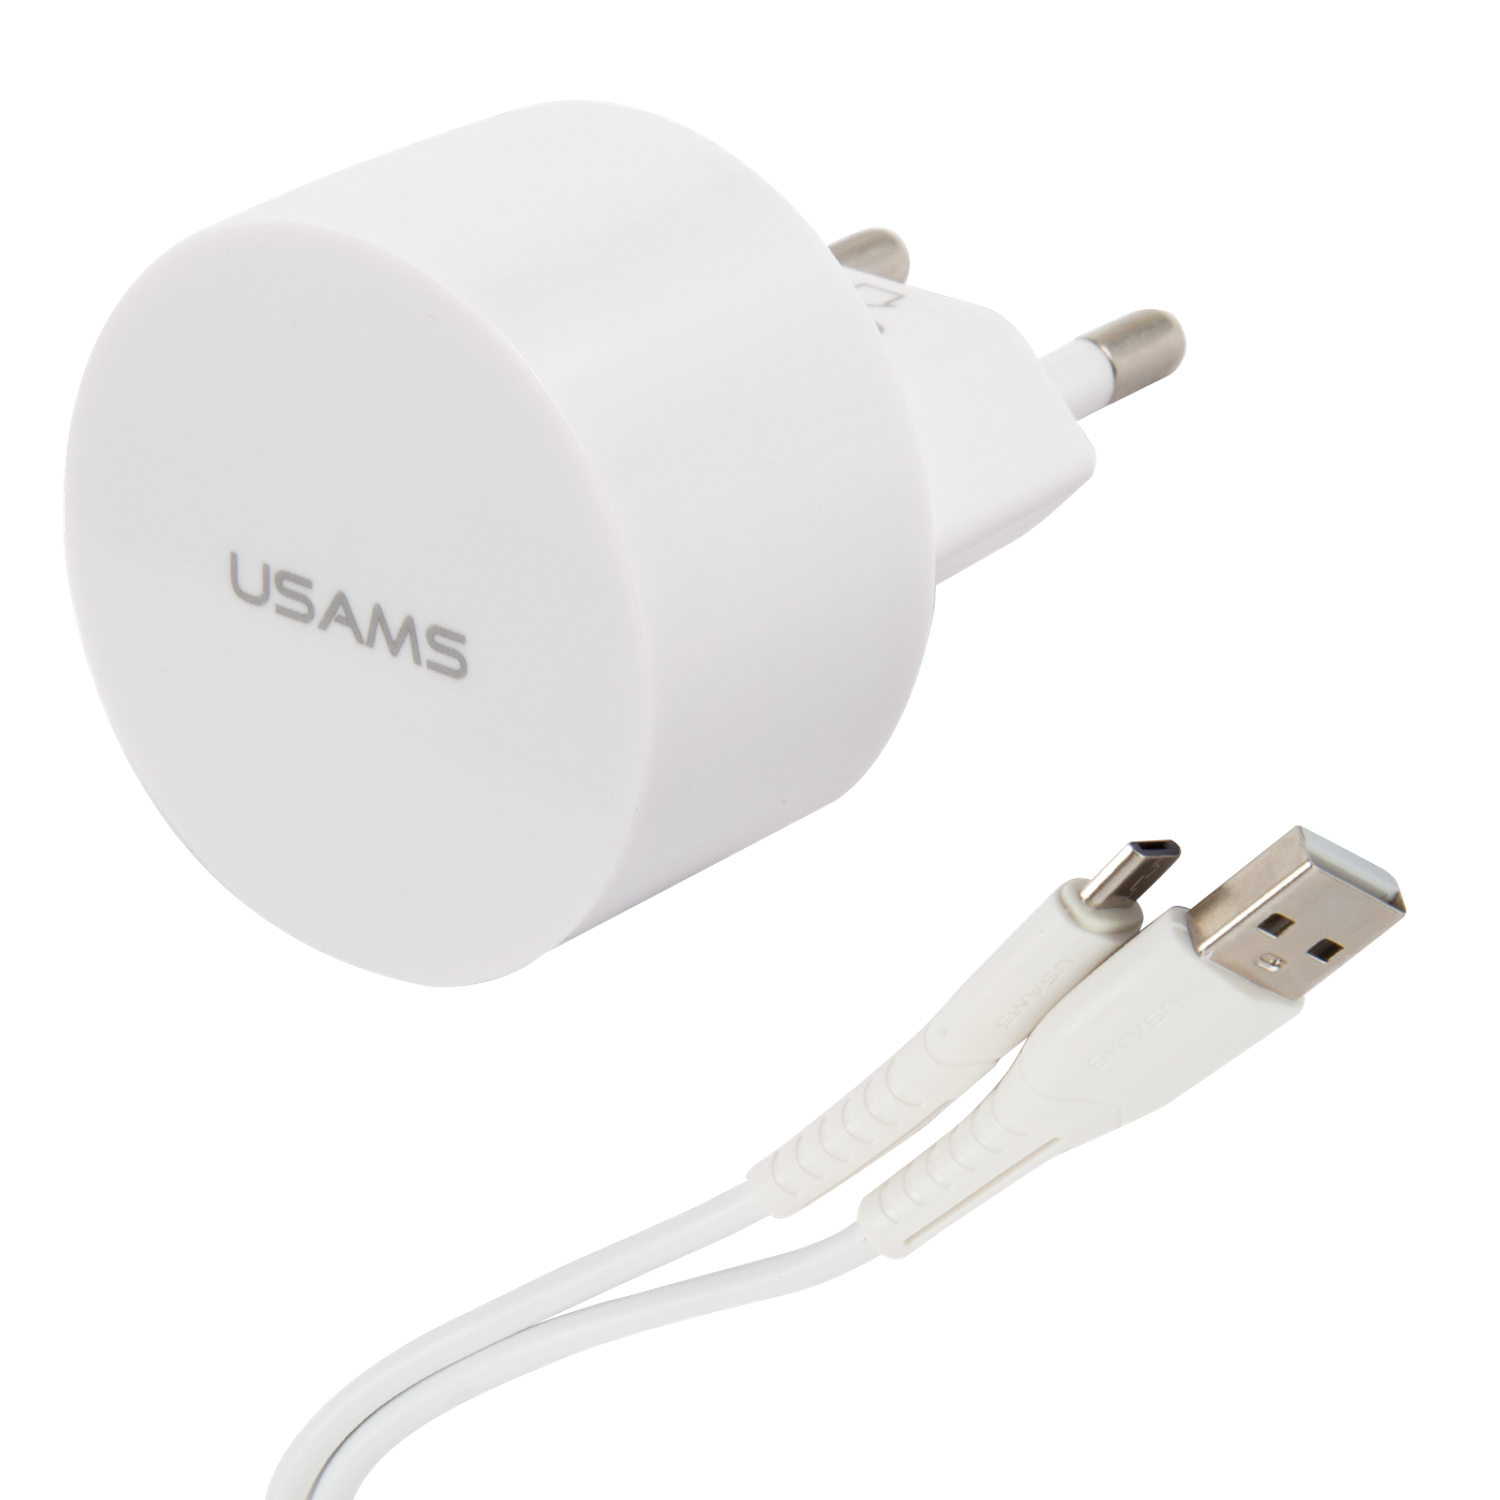 Сетевое ЗУ USAMS Модель Send-Tu Series Set 2 USB белый в комплекте кабель Micro USB U35 - фото 2